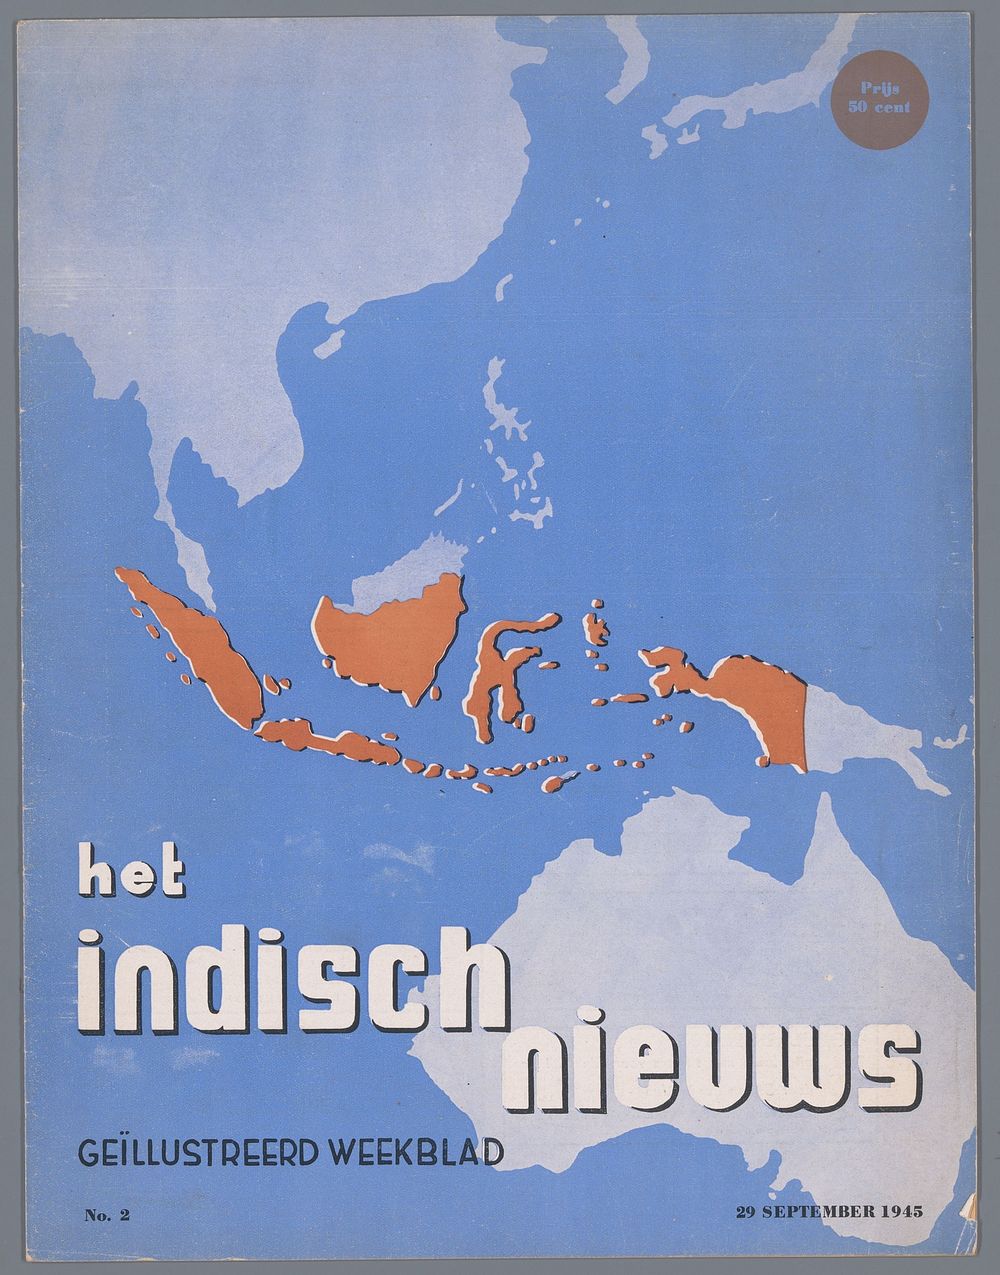 Het Indisch nieuws (1945) by G de Pree and L F Tijmstra